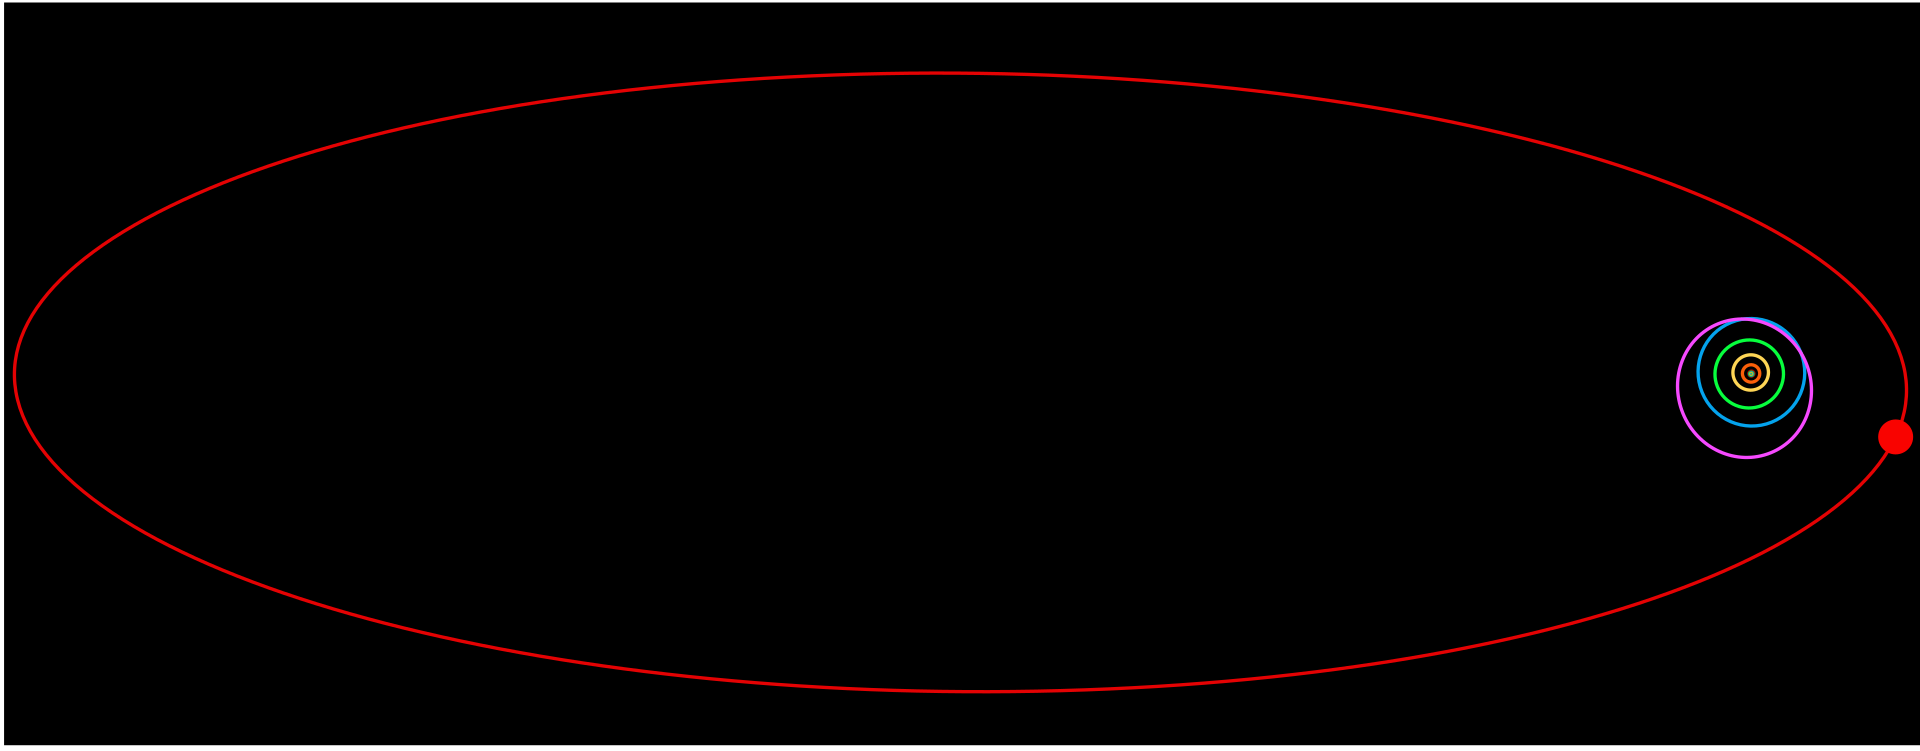 Орбита Седны (выделена красным цветом) по сравнению с орбитами внешних планет Солнечной системы. Фото © Wikipedia